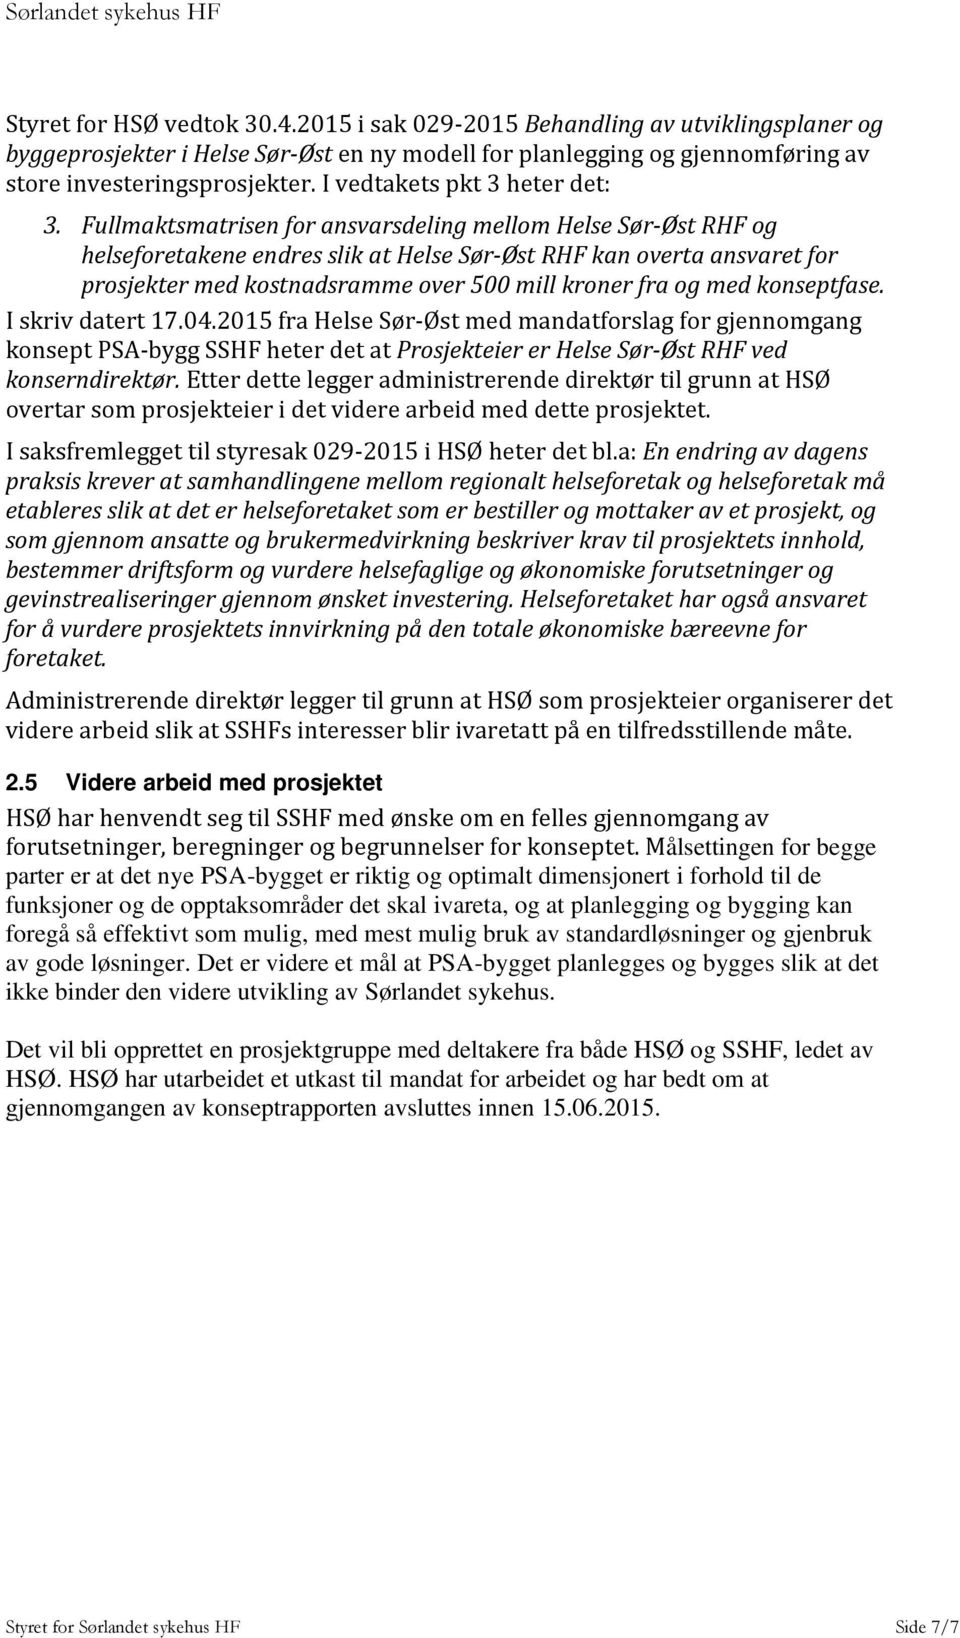 Fullmaktsmatrisen for ansvarsdeling mellom Helse Sør-Øst RHF og helseforetakene endres slik at Helse Sør-Øst RHF kan overta ansvaret for prosjekter med kostnadsramme over 500 mill kroner fra og med